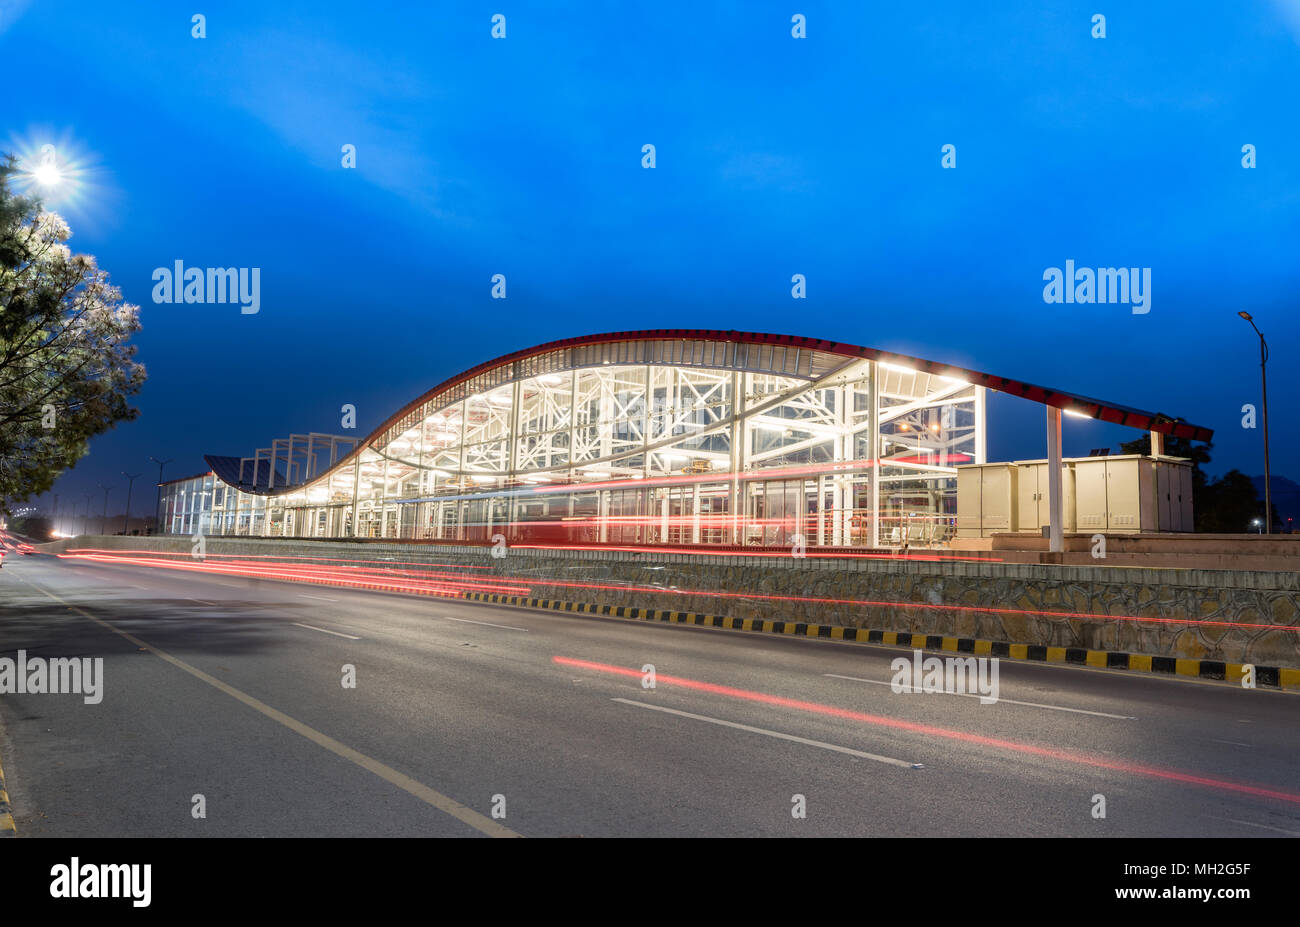 La estación de metro bellamente diseñados y su servicio de autobuses rápidos sirve las ciudades gemelas de Rawalpindi e Islamabad en Pakistán Foto de stock